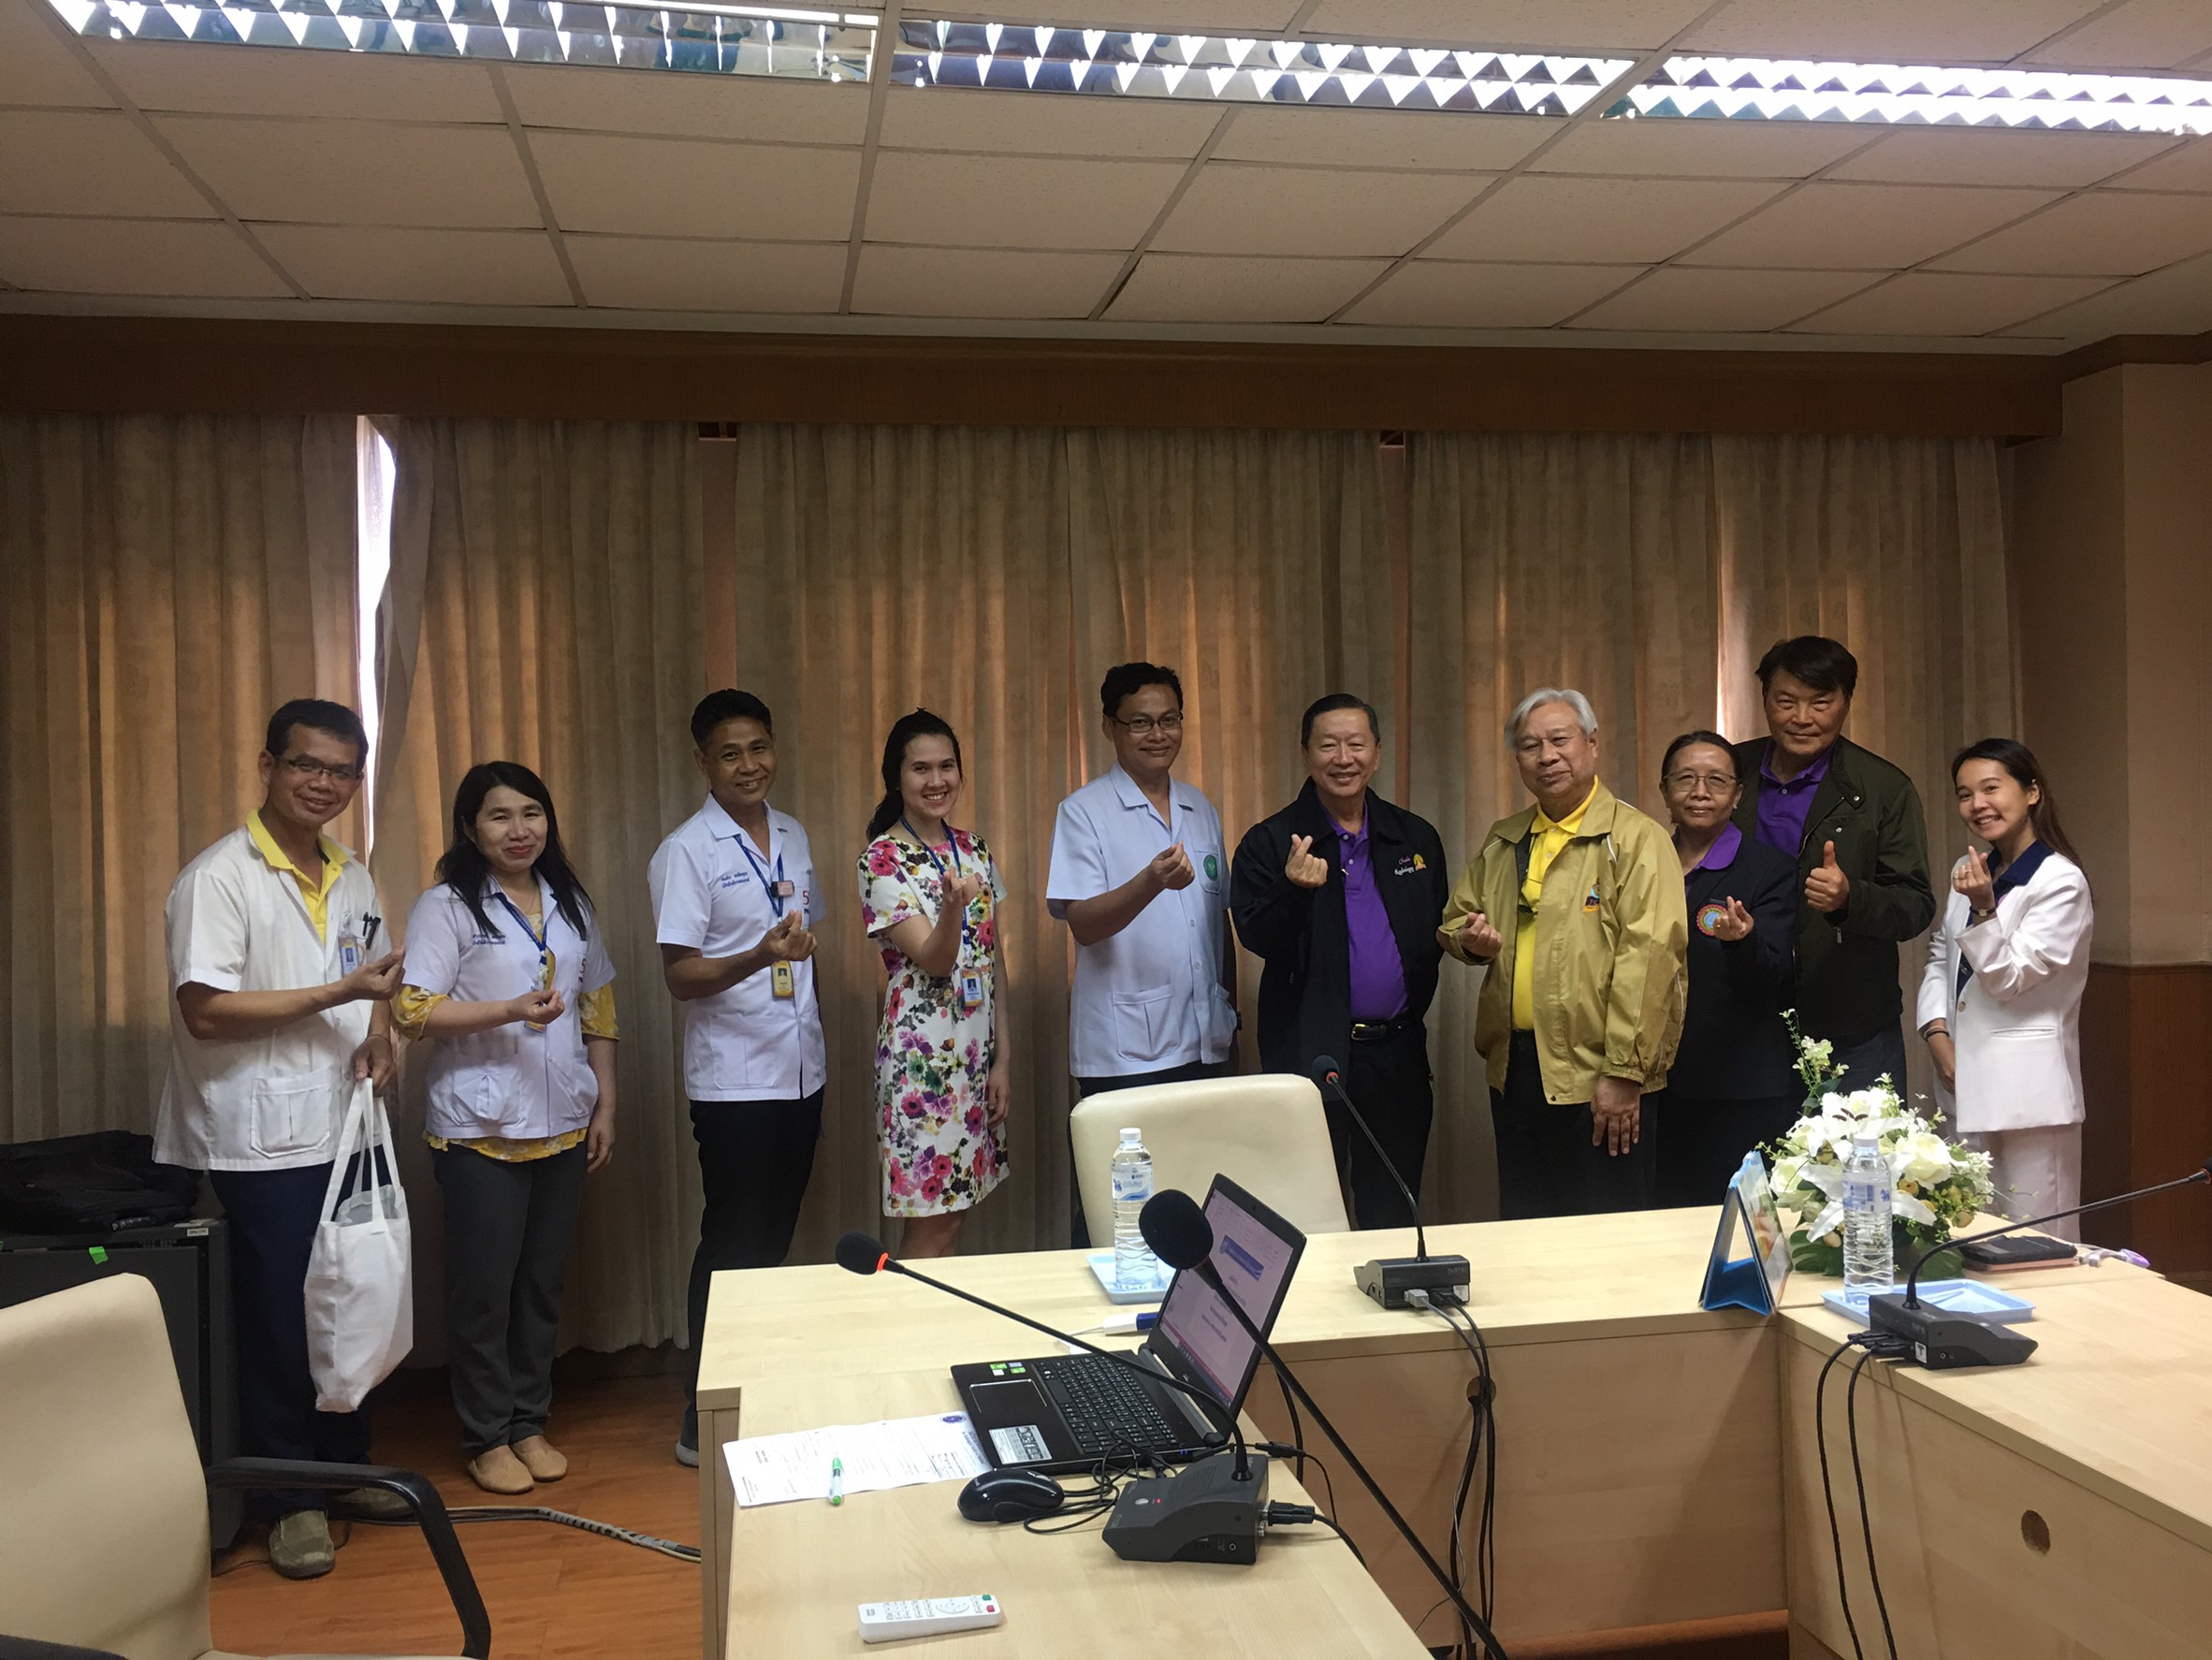 ประชุมวิชาการร่วมกับรังสีการแพทย์แห่งประเทศไทย ครั้งที่17 27-29 พ.ย. - พร้อมเข้าเยี่ยมและให้กำลังใจหน่วยงานรังสีวิทยาในพื้นที่จังหวัดอุบลราชธานีระหว่างวันที่ 25-26 พฤศจิกายน 2562 34